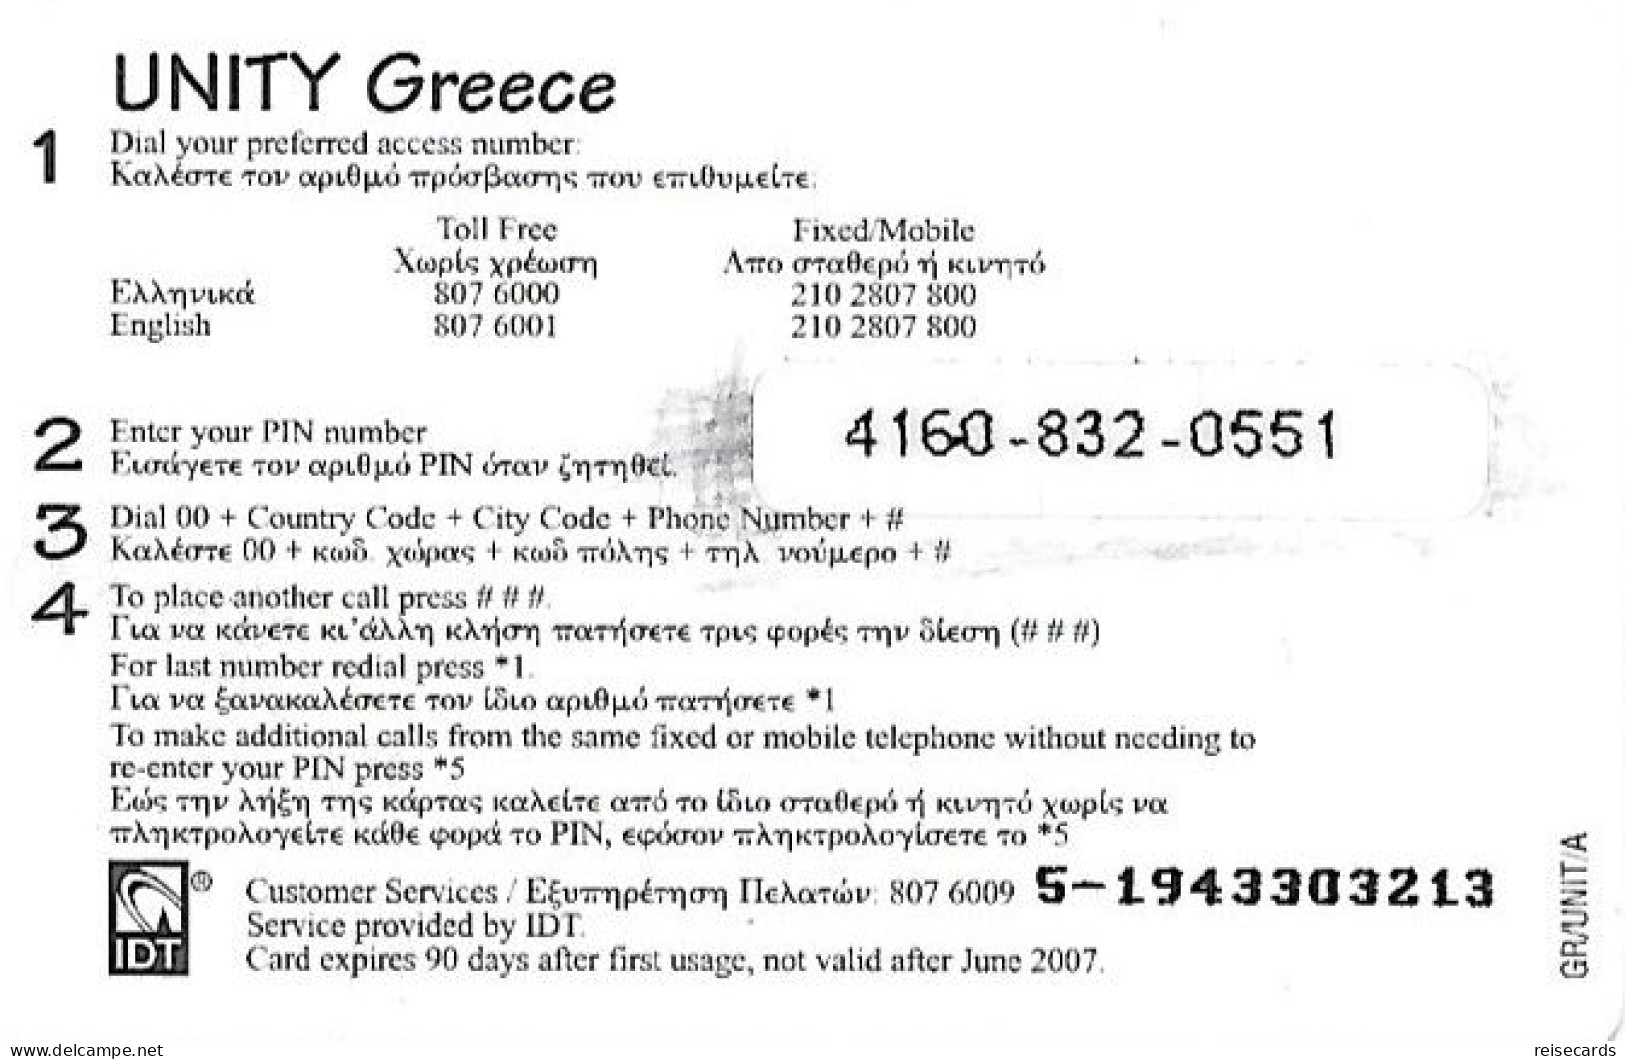 Greece: Prepaid IDT Unity 06.07 - Grèce